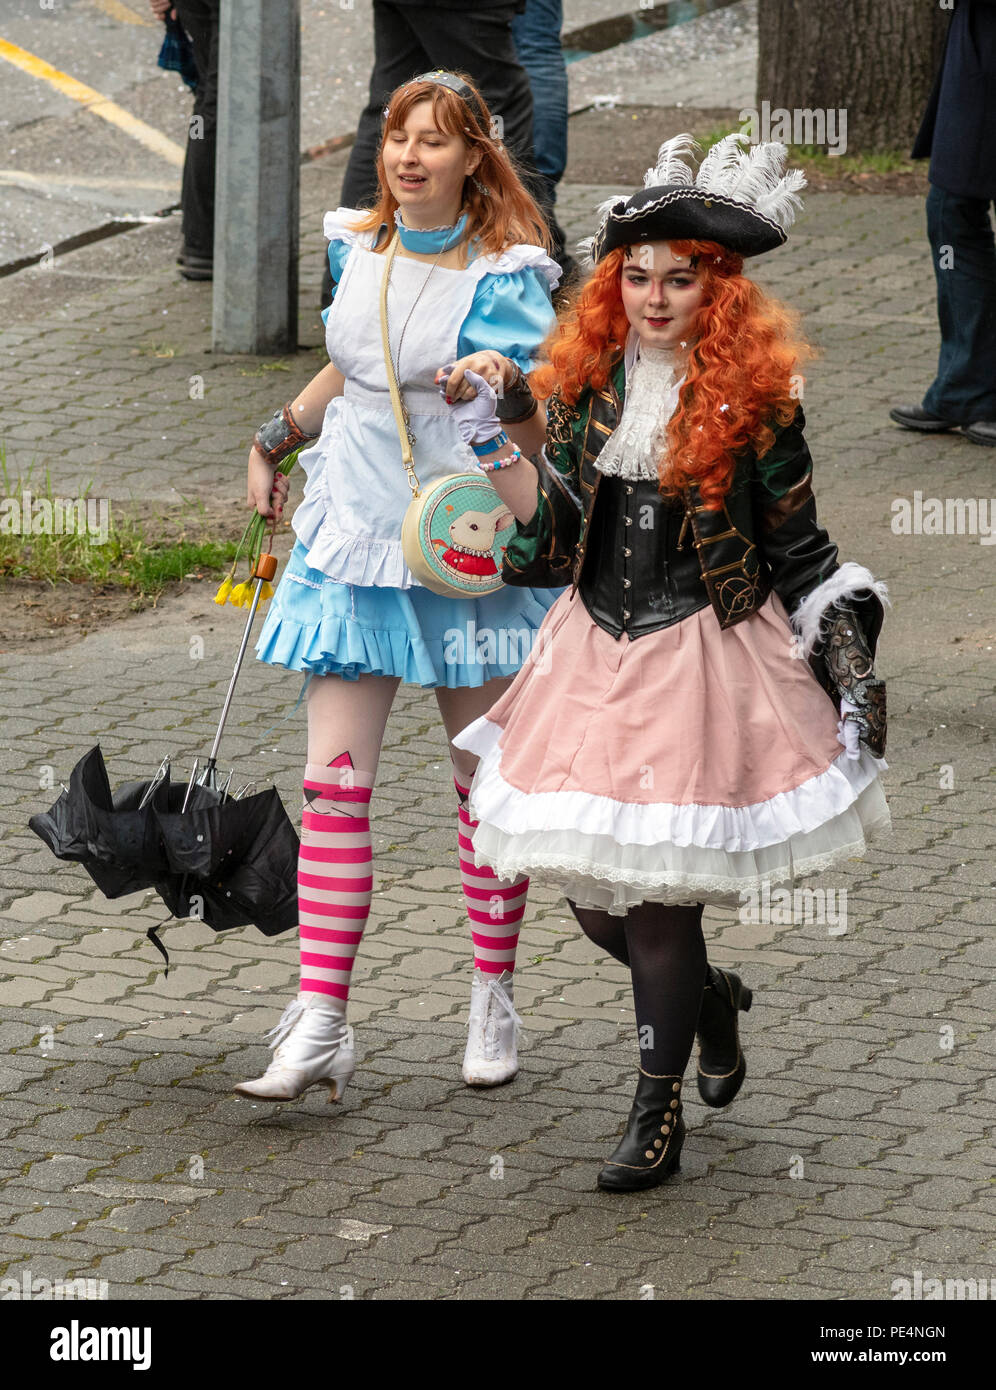 2 Teenager Mädchen mit cos Kostüme spielen gekleidet, Karnevalsumzug in  Straßburg, Elsass, Frankreich, Europa Stockfotografie - Alamy